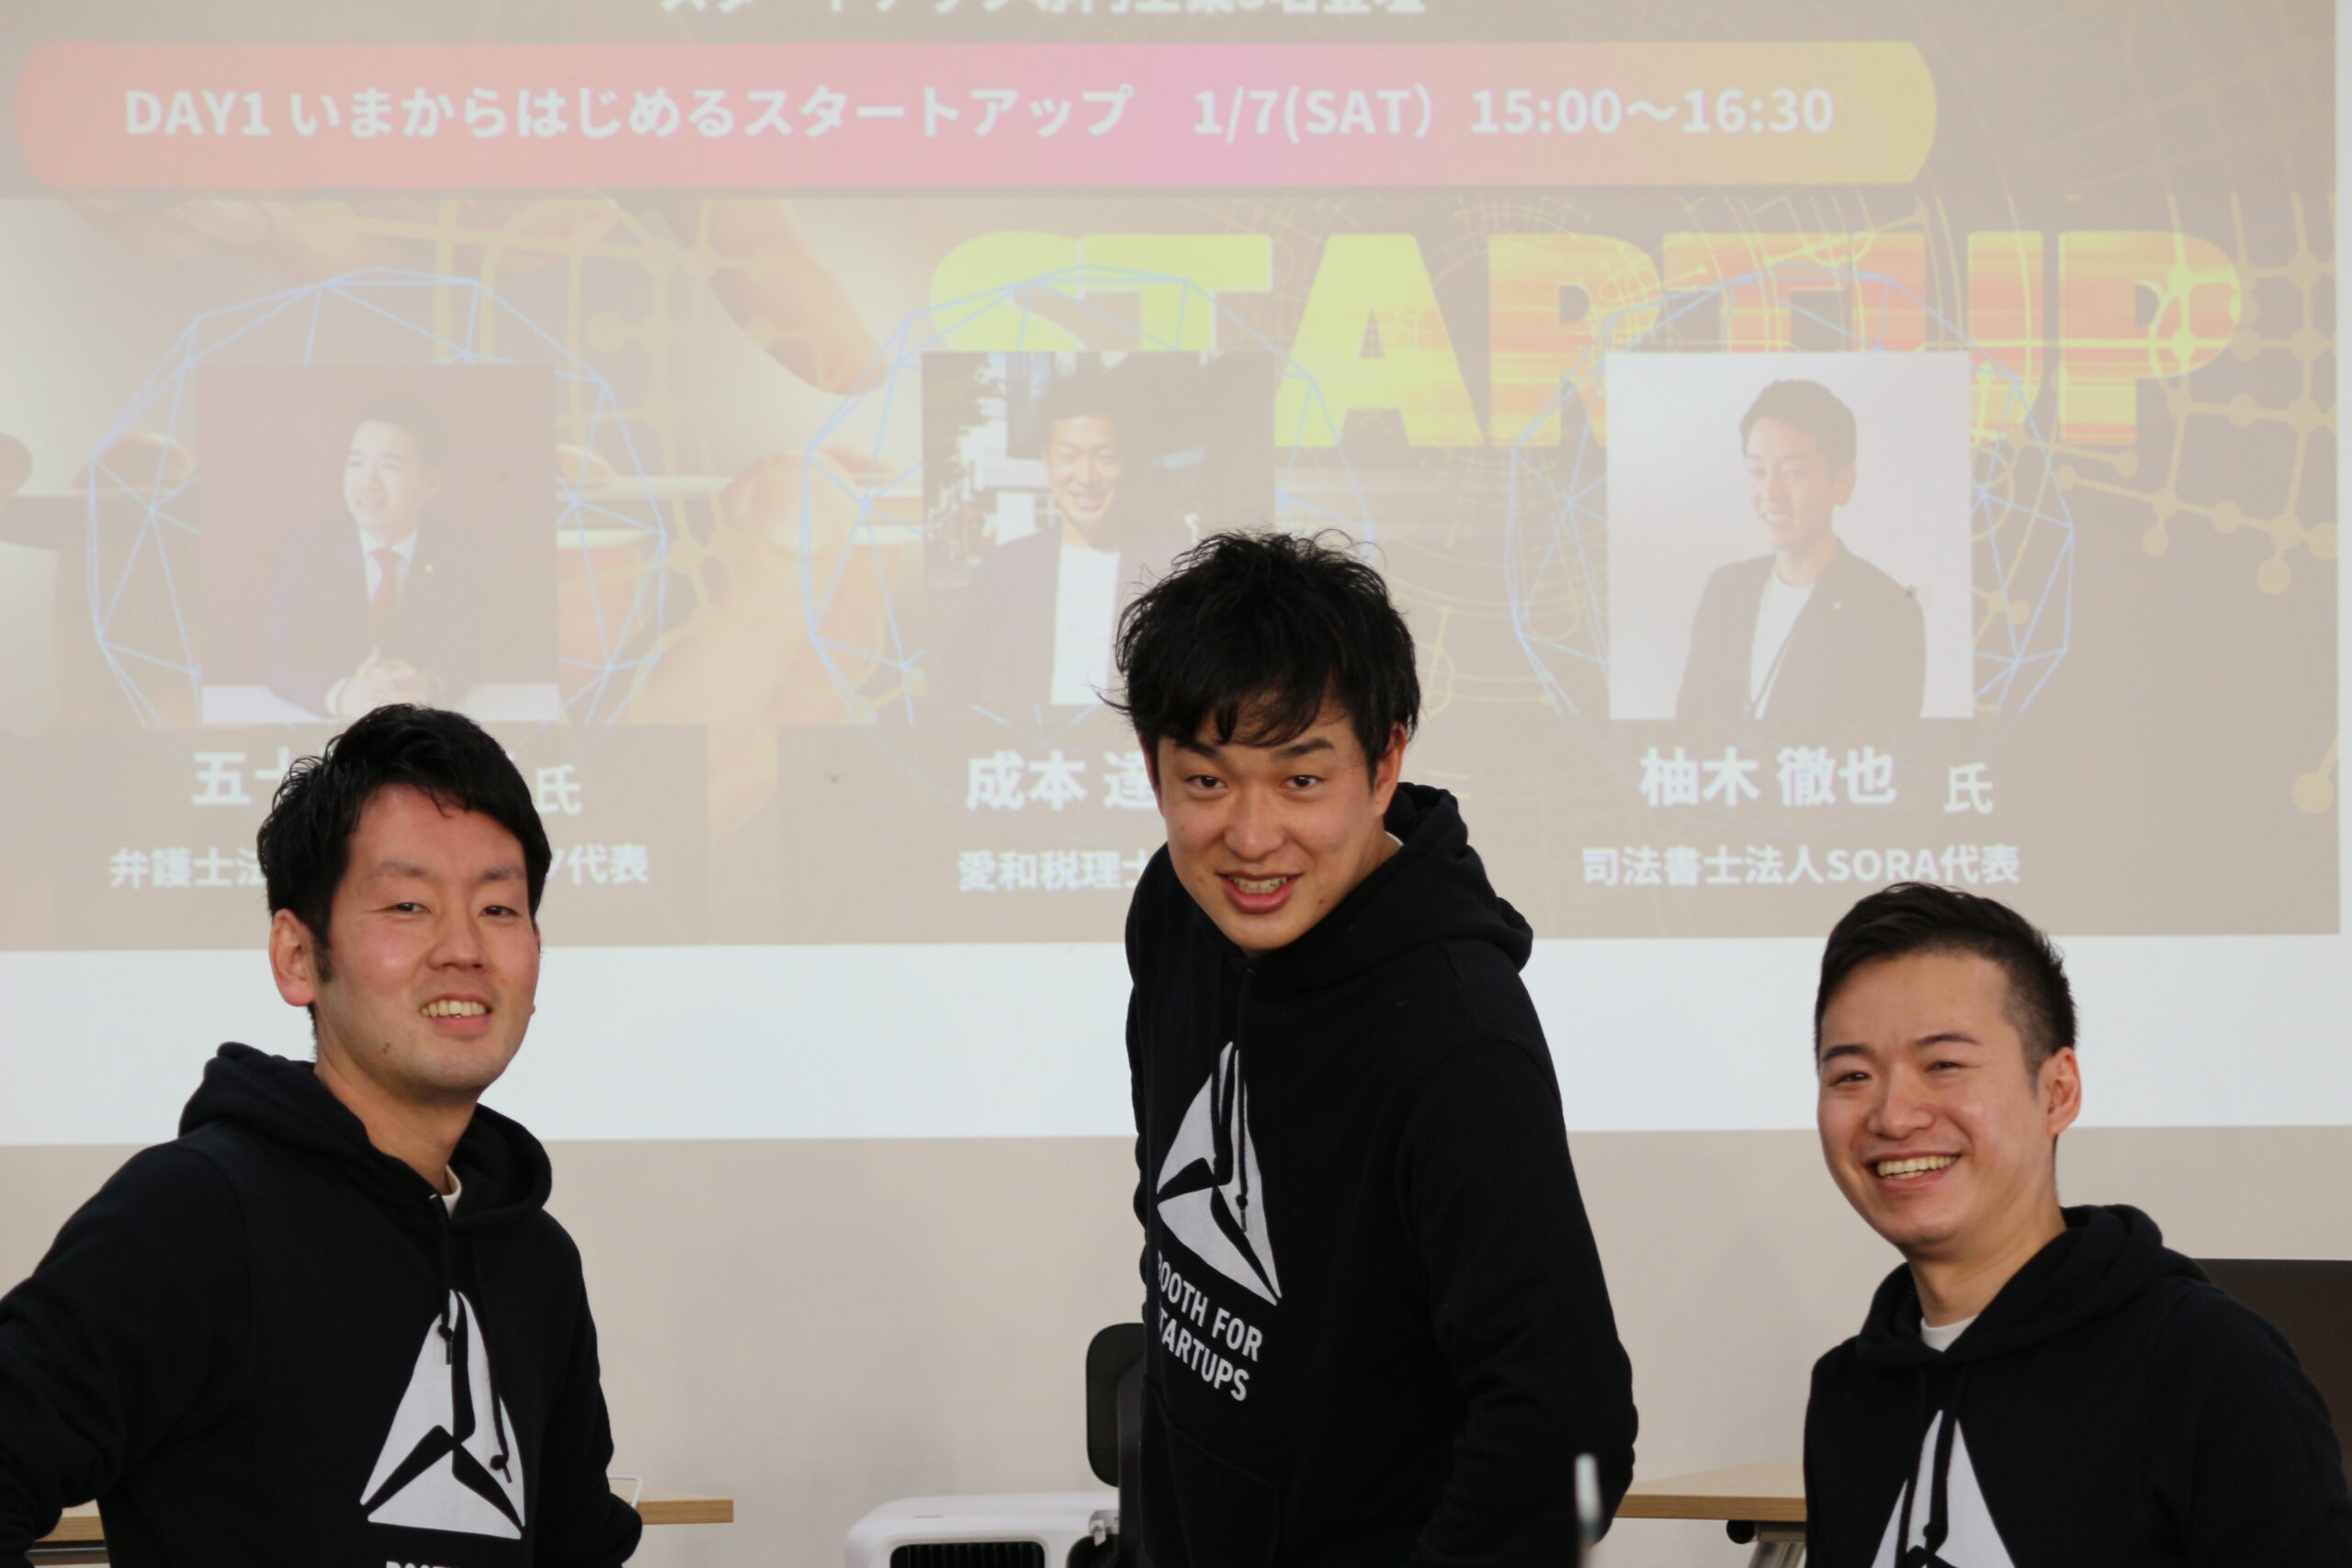 【満員御礼】DAY1申込者300名達成。「スタートアップを学ぶ2DAYS」＠Startup Hub Tokyo 丸の内